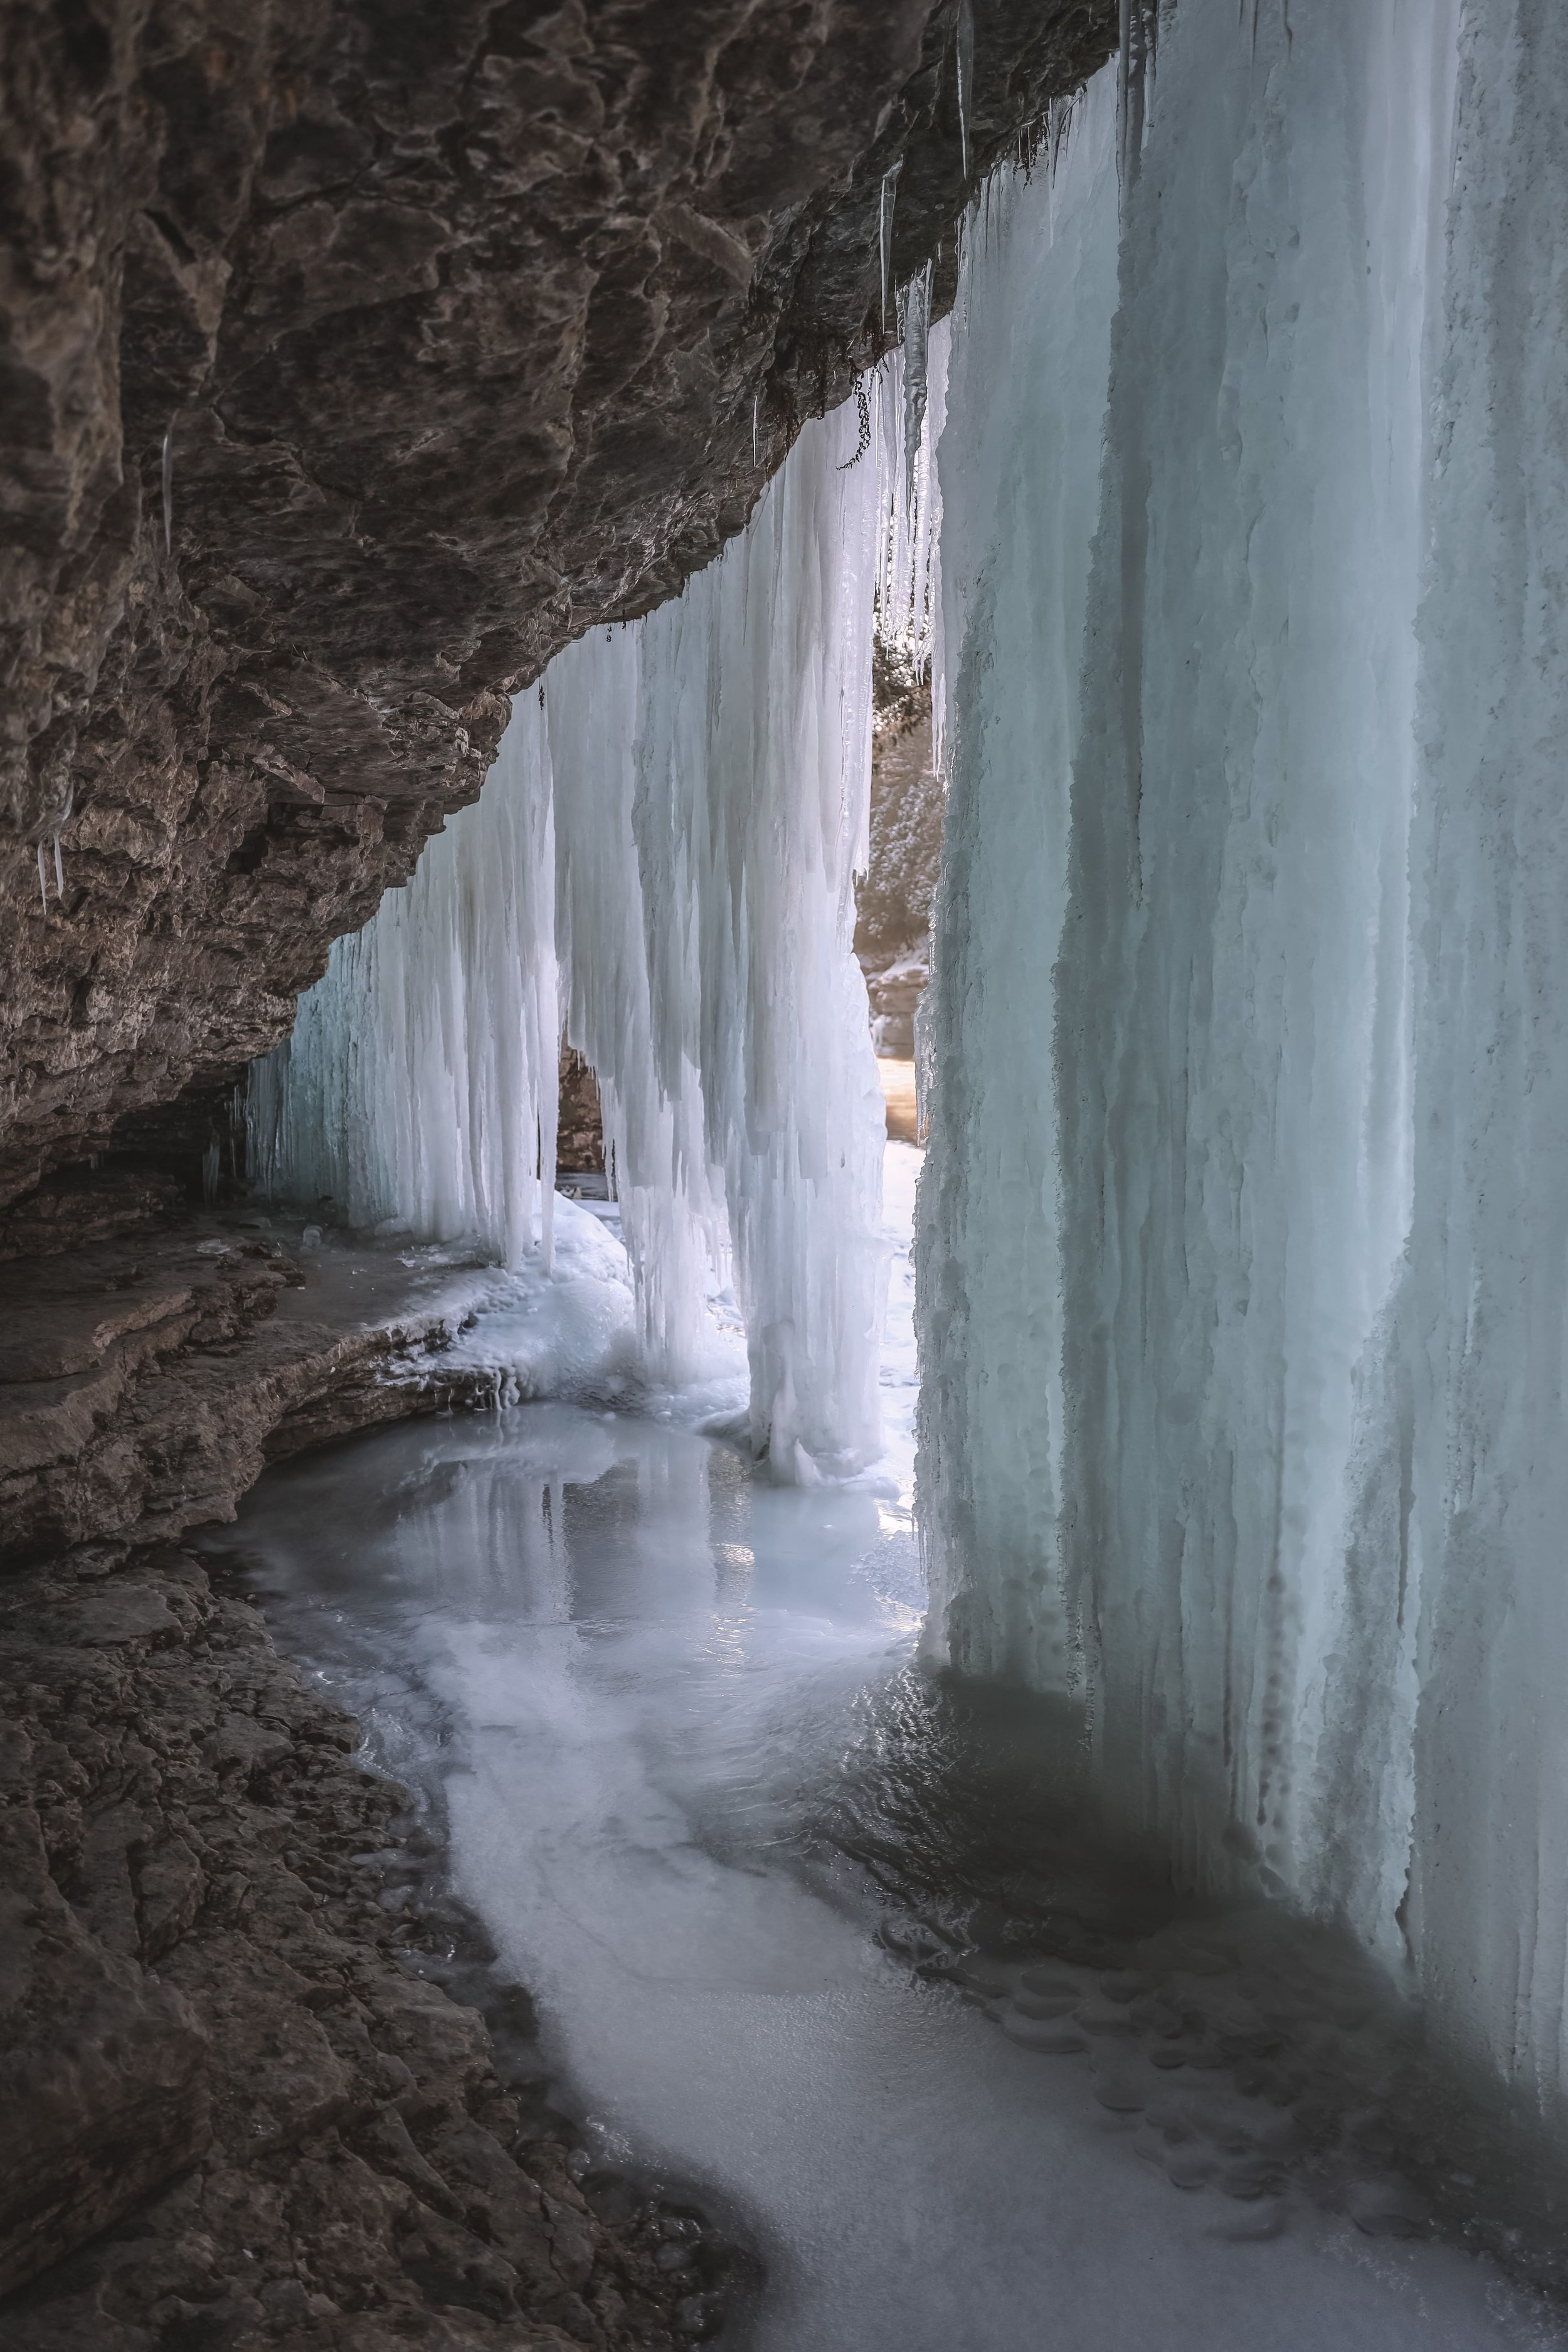 Behind the ice wall - Gorges de la Rivière Sainte-Anne - Portneuf - Quebec - Canada